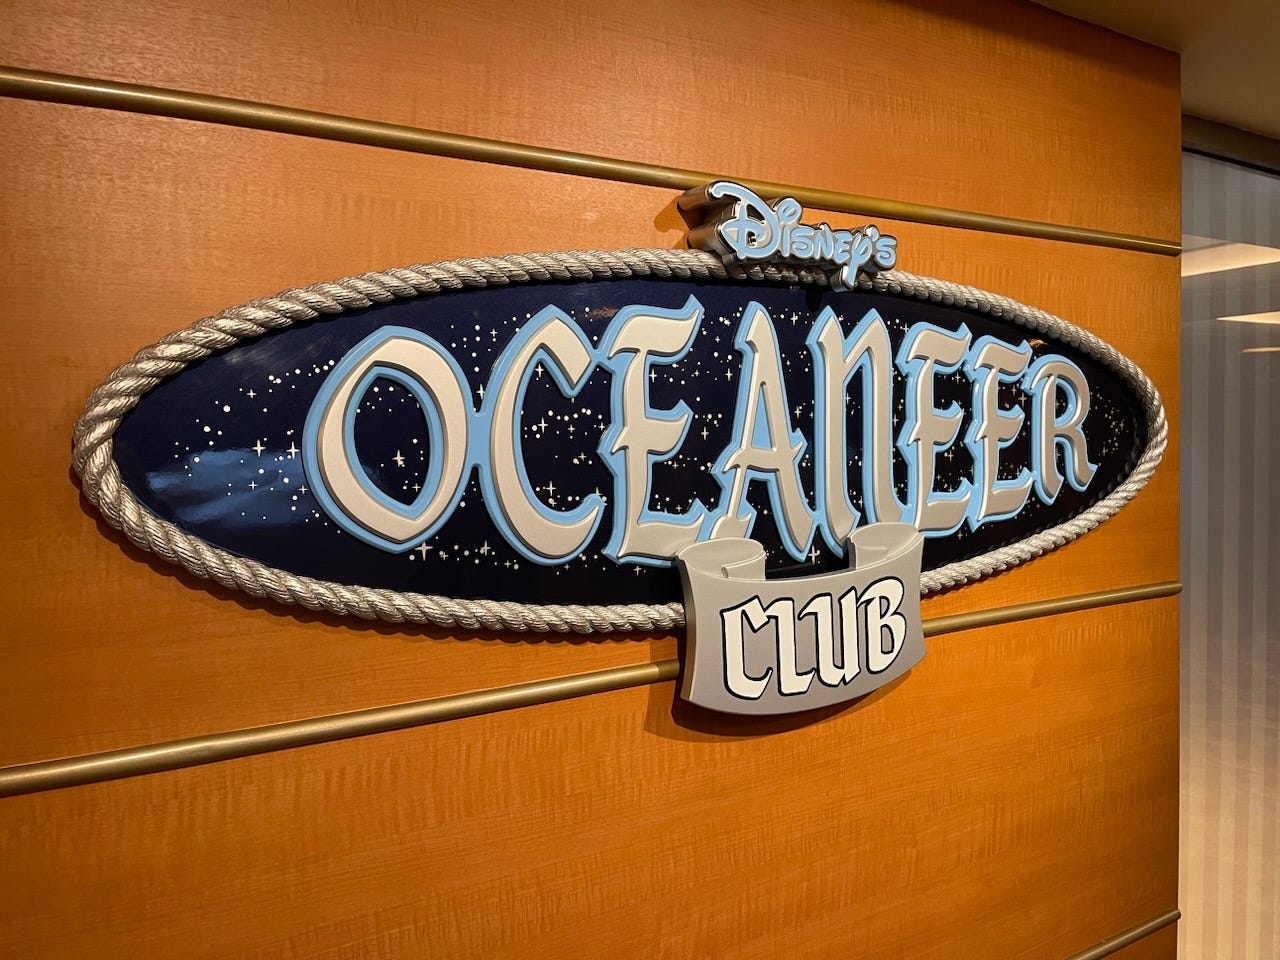 Melden Sie sich auf einer Kreuzfahrt vor Disneys Oceaneer Club an